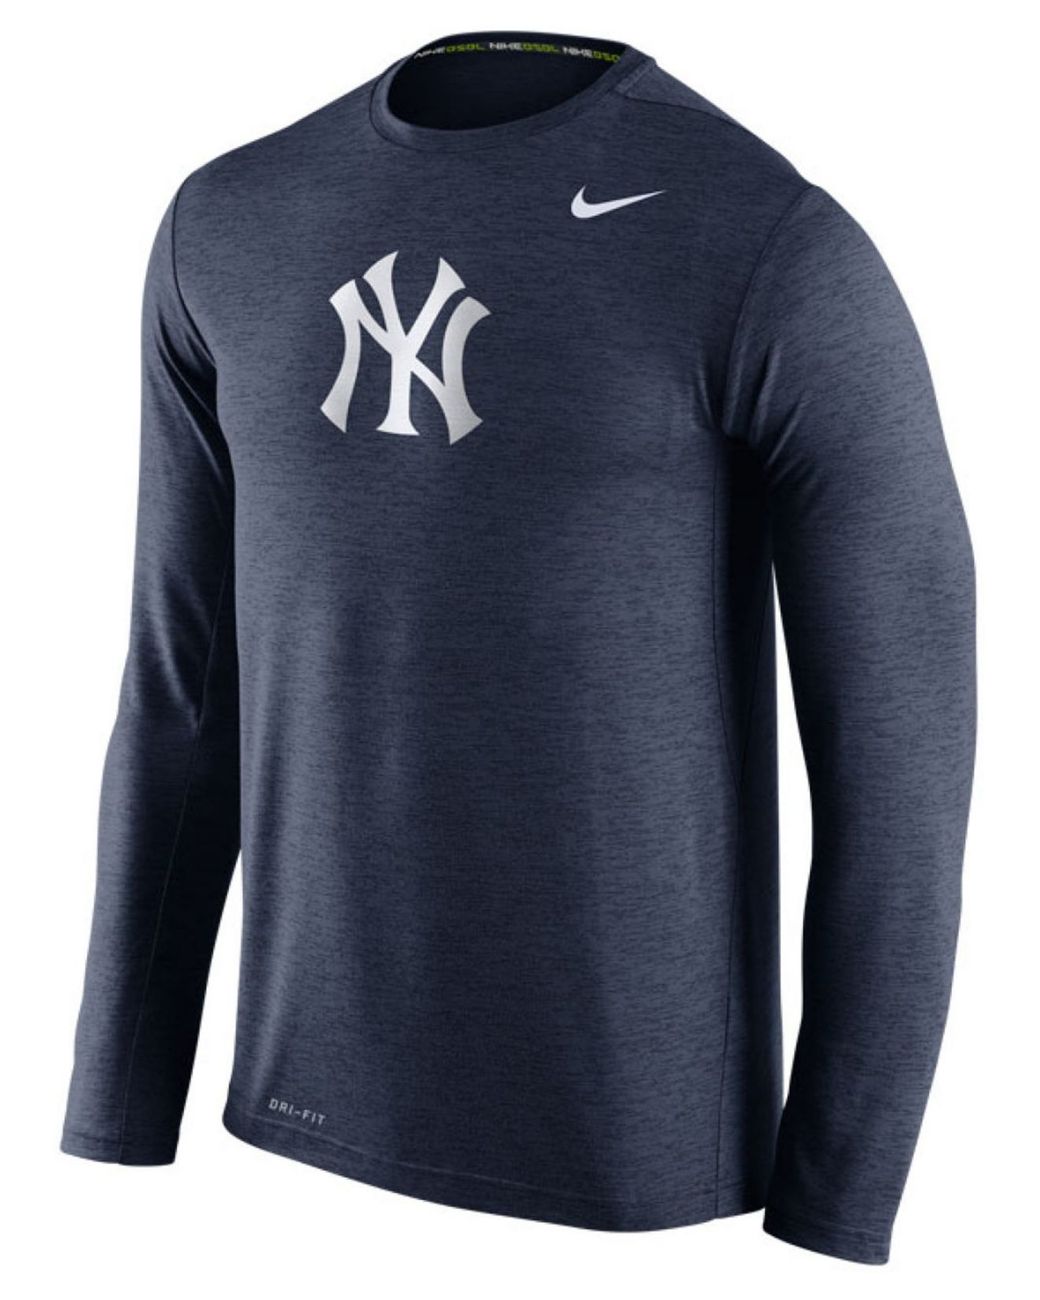 Nike Dri-FIT Sideline Team (NFL New York Giants) Men's Long-Sleeve T-Shirt.